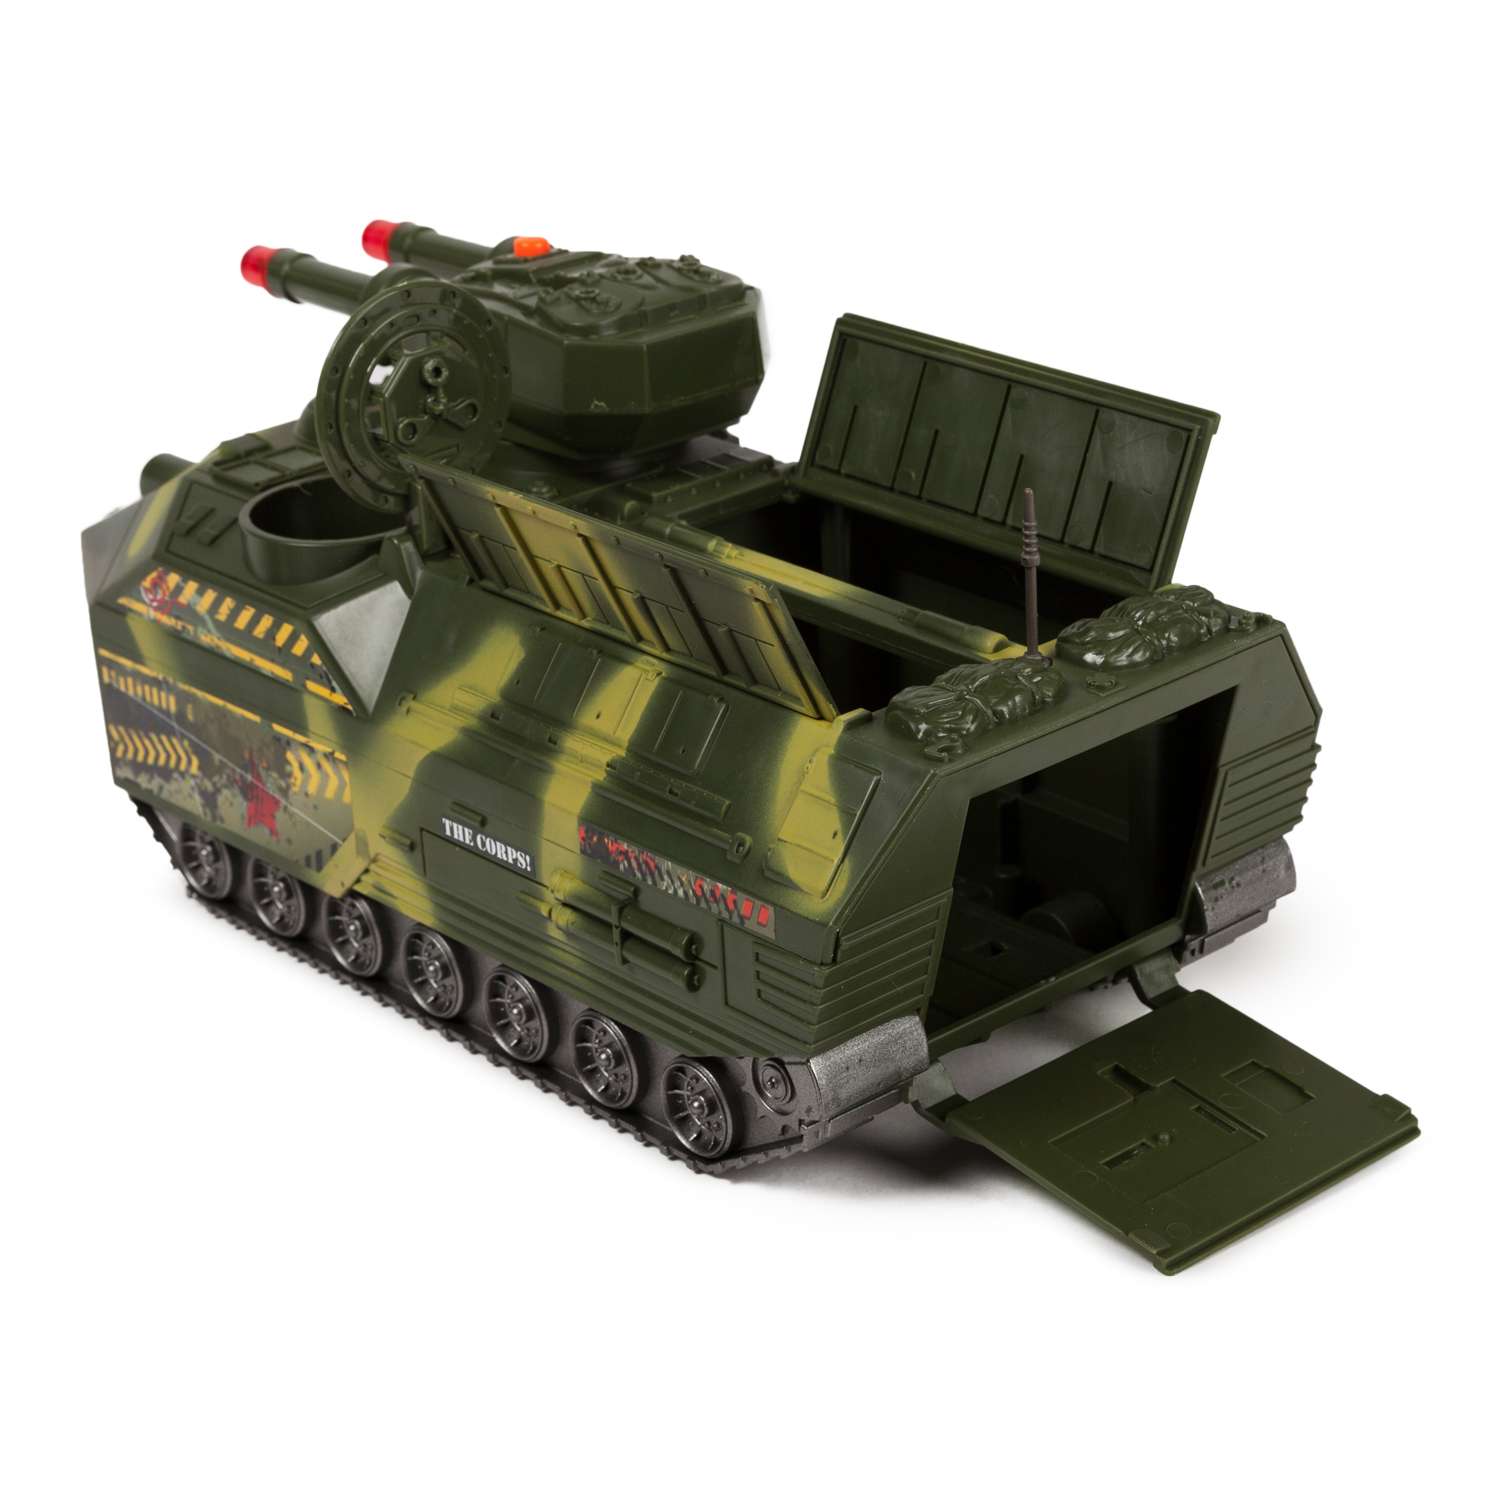 Бункер-танк Global Bros камуфляжный (транспортное средство, 2 фигурки, аксессуары) - фото 7